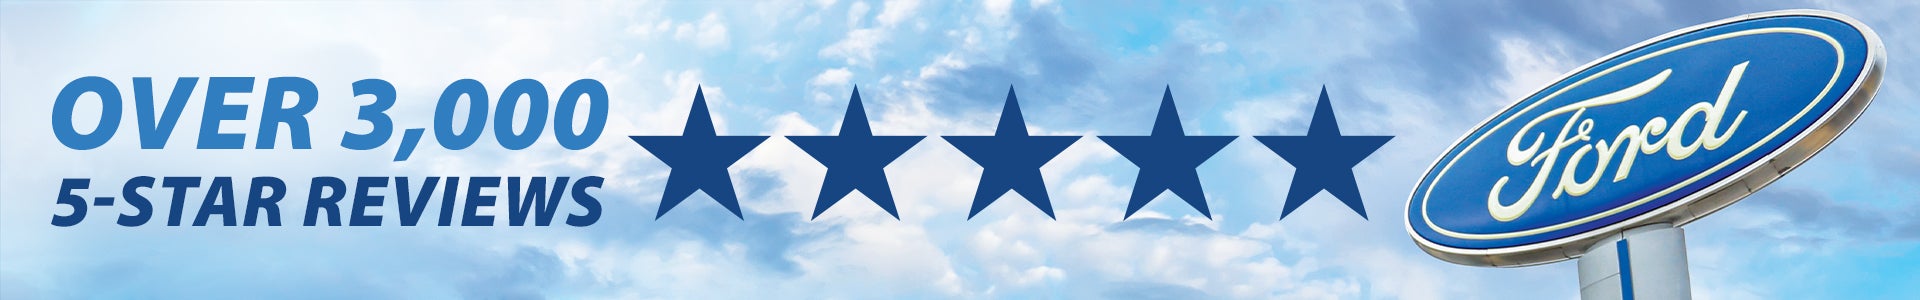 5 Star Reviews at Tipton Ford